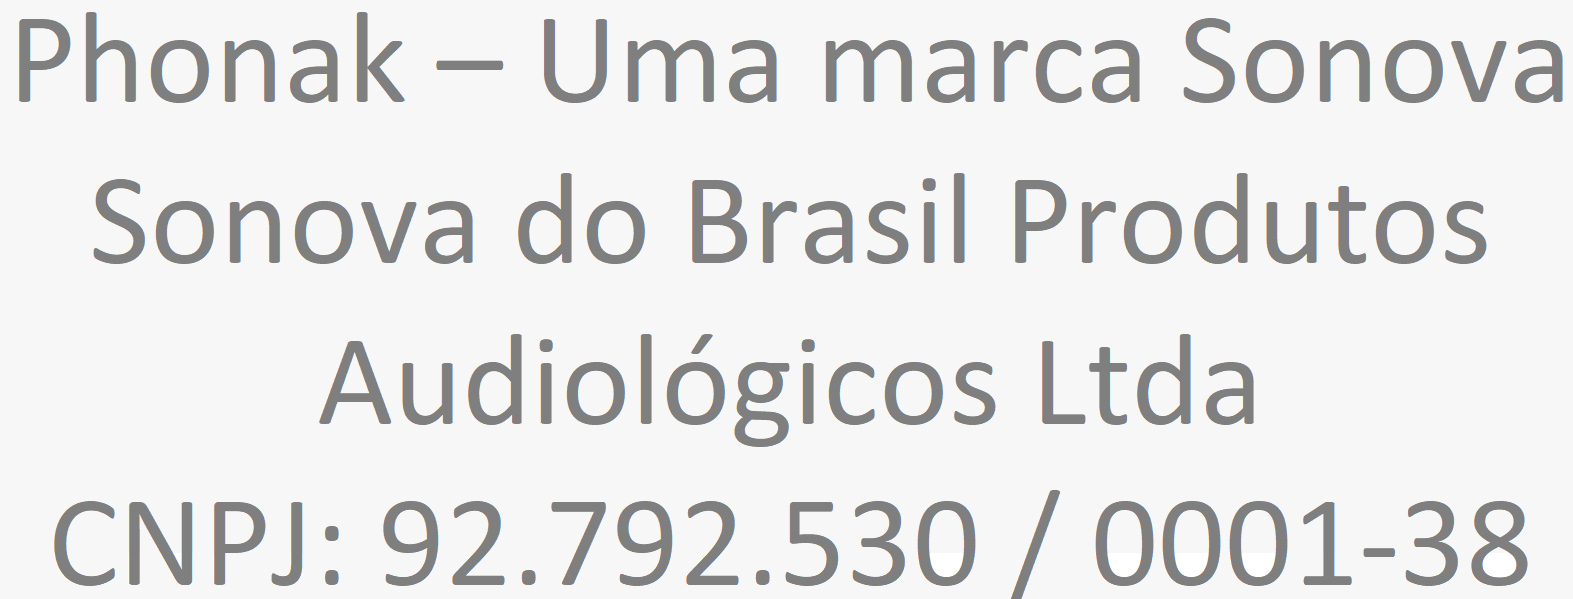 Phonak – Uma marca Sonova - Sonova do Brasil Produtos Audiológicos Ltda - CNPJ: 92.792.530 / 0001-38